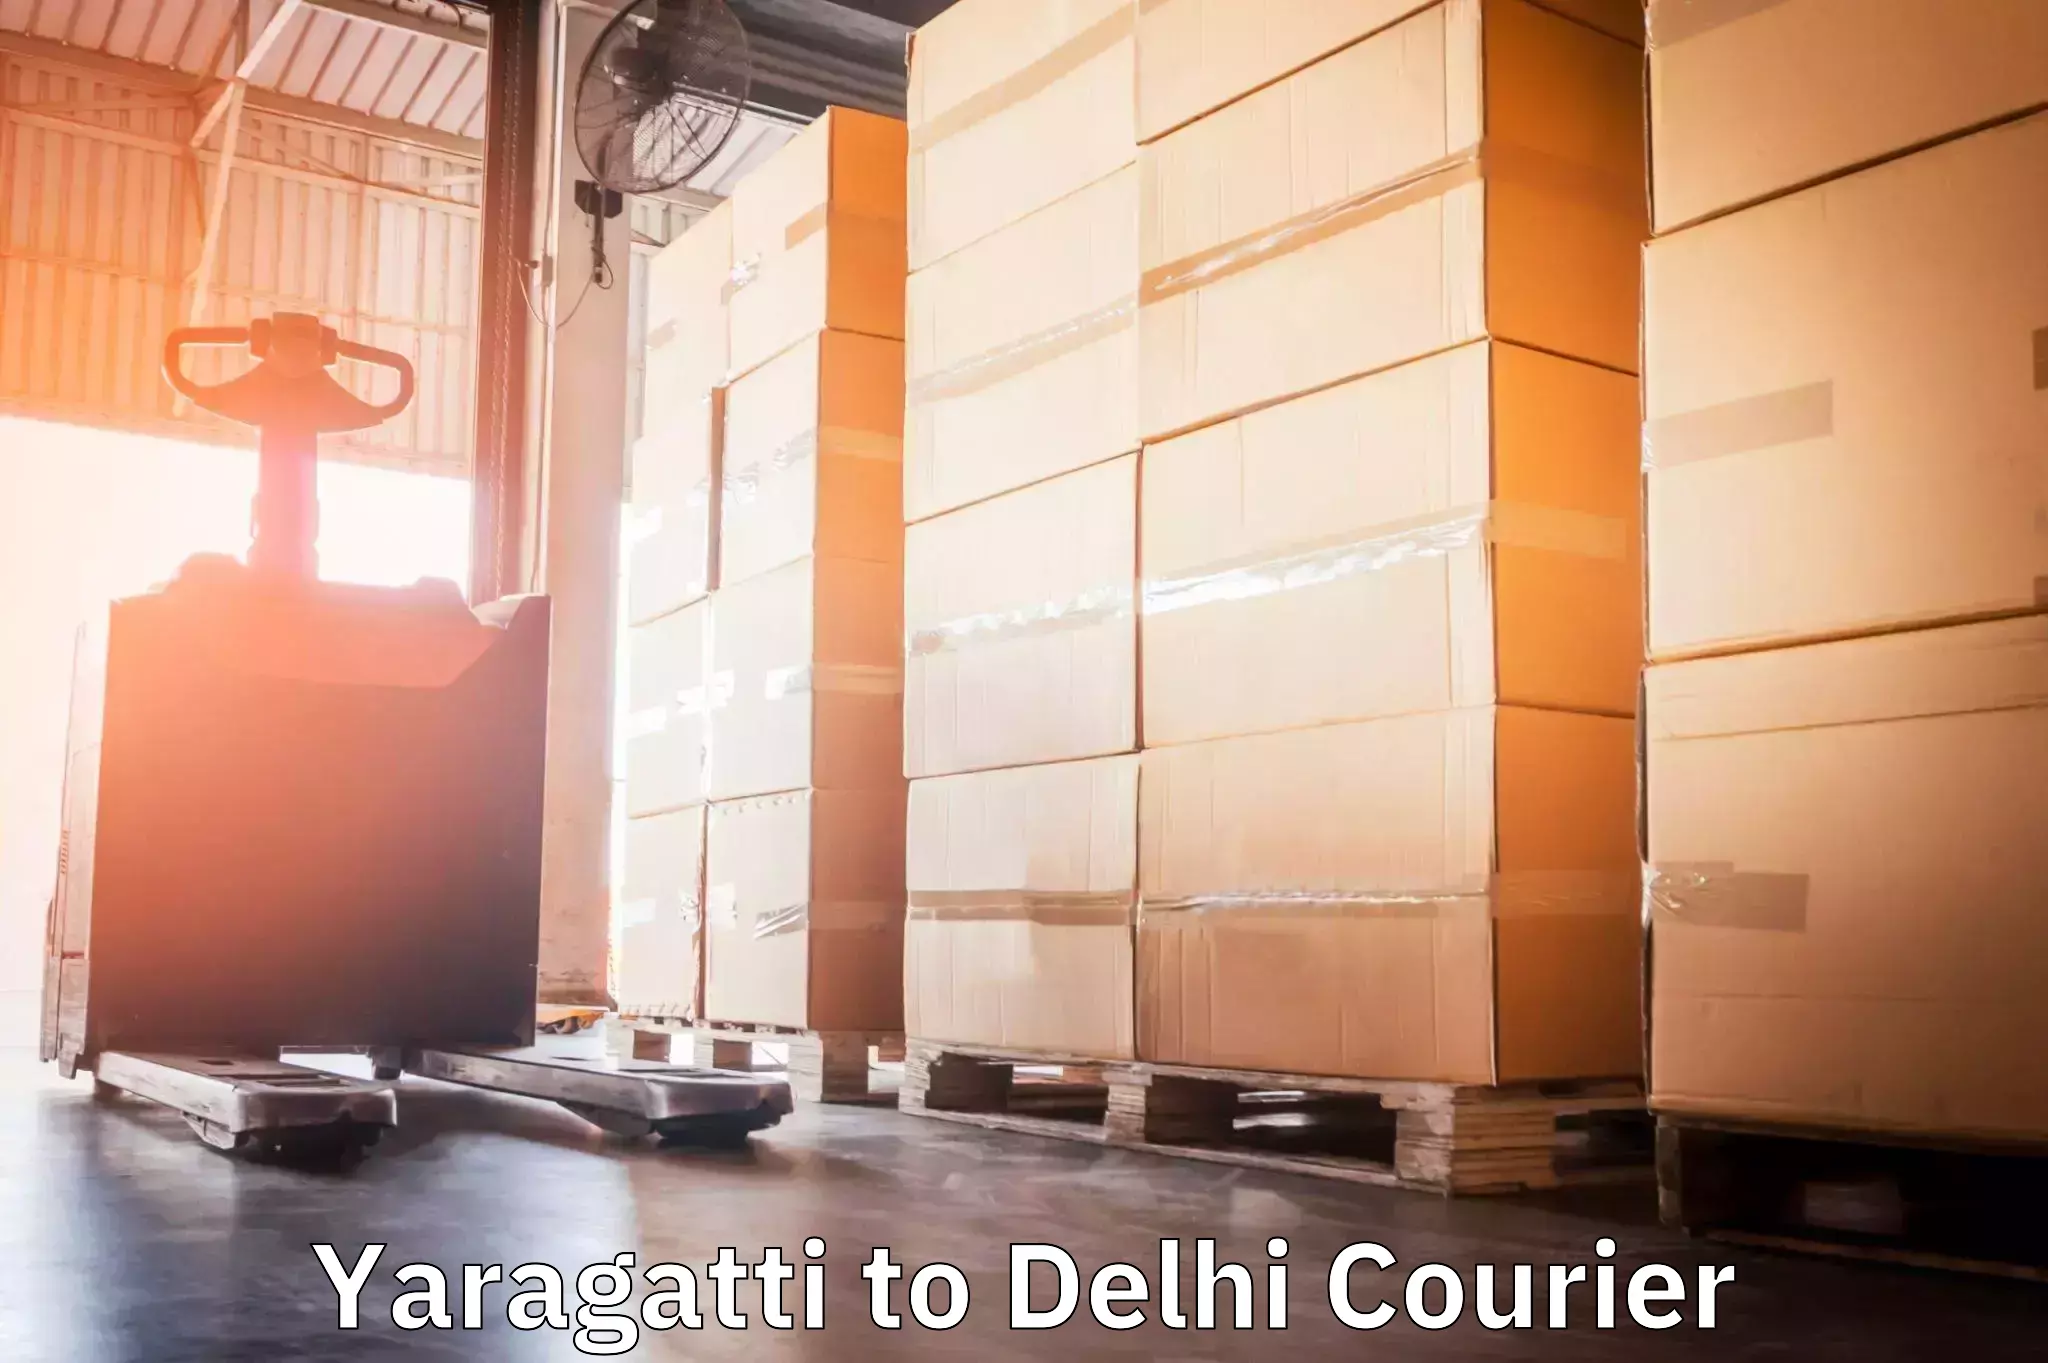 Urgent courier needs Yaragatti to IIT Delhi